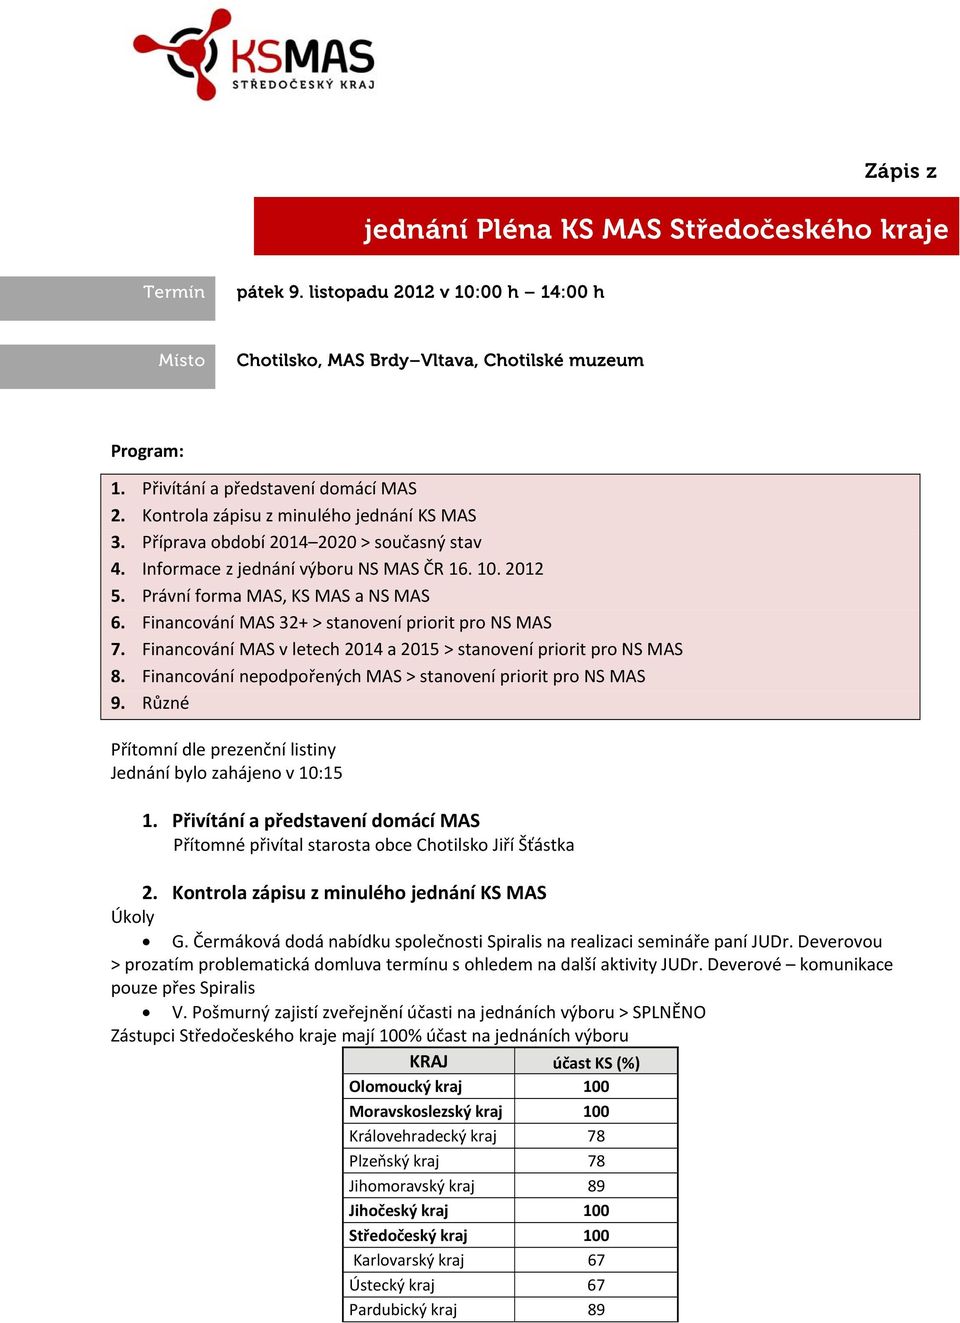 Financování MAS 32+ > stanovení priorit pro NS MAS 7. Financování MAS v letech 2014 a 2015 > stanovení priorit pro NS MAS 8. Financování nepodpořených MAS > stanovení priorit pro NS MAS 9.